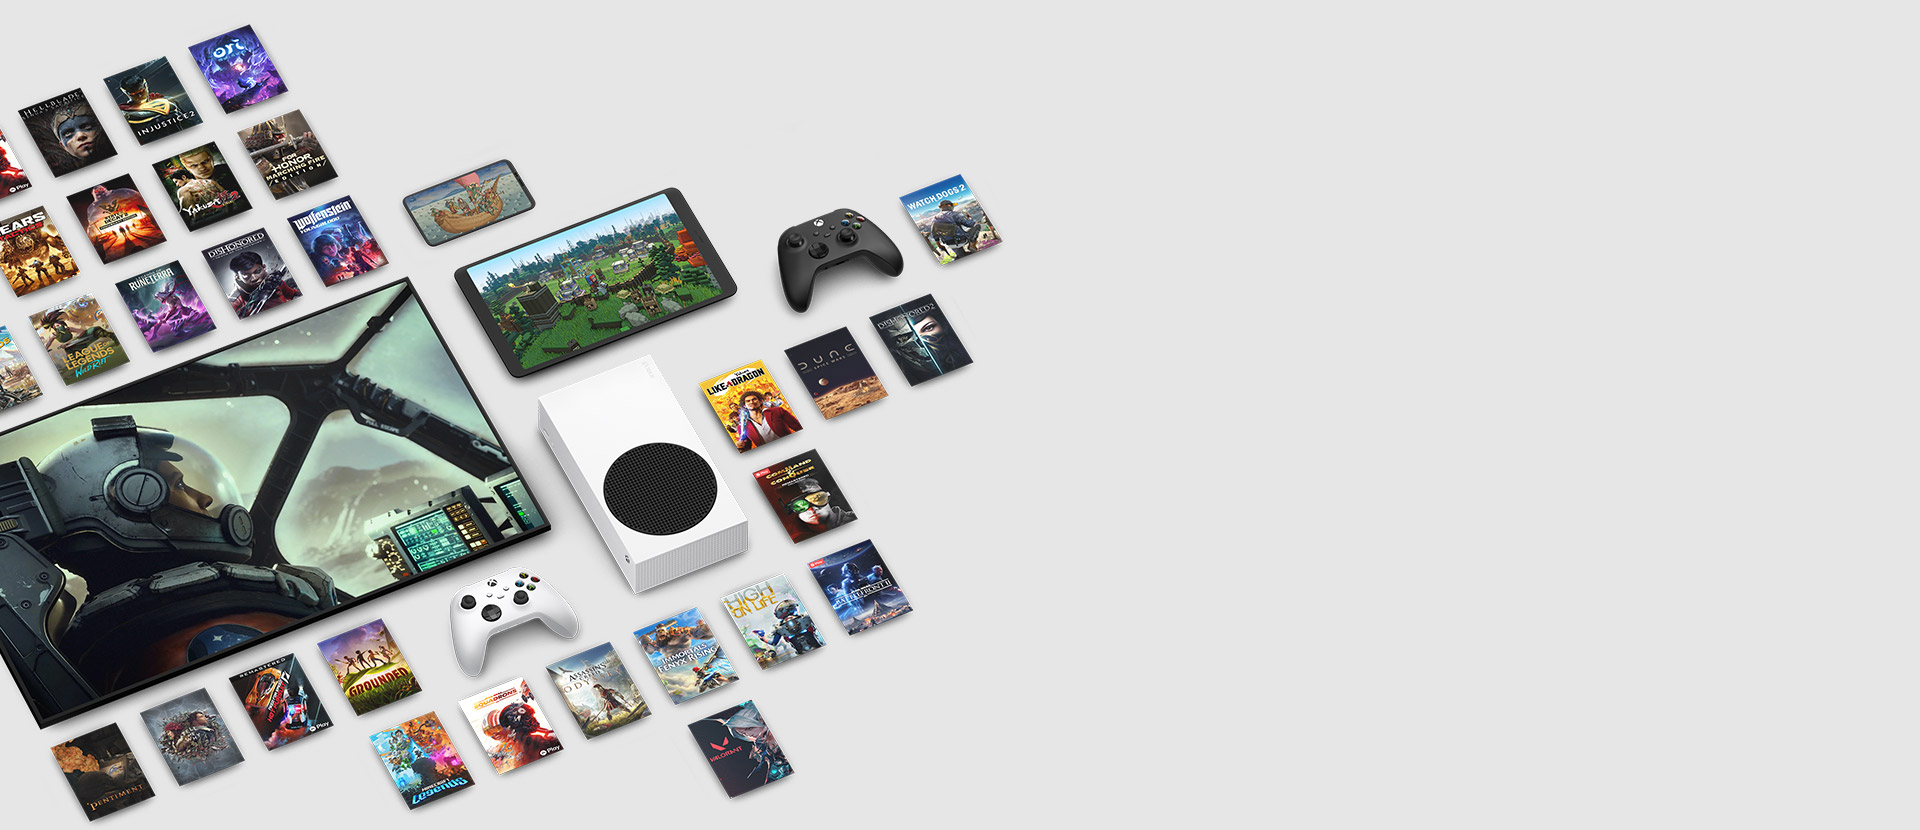 Imágenes de varios juegos disponibles ahora con Xbox Game Pass Ultimate rodean varios dispositivos, incluidos una consola, un celular, una tableta, un televisor inteligente y controles.